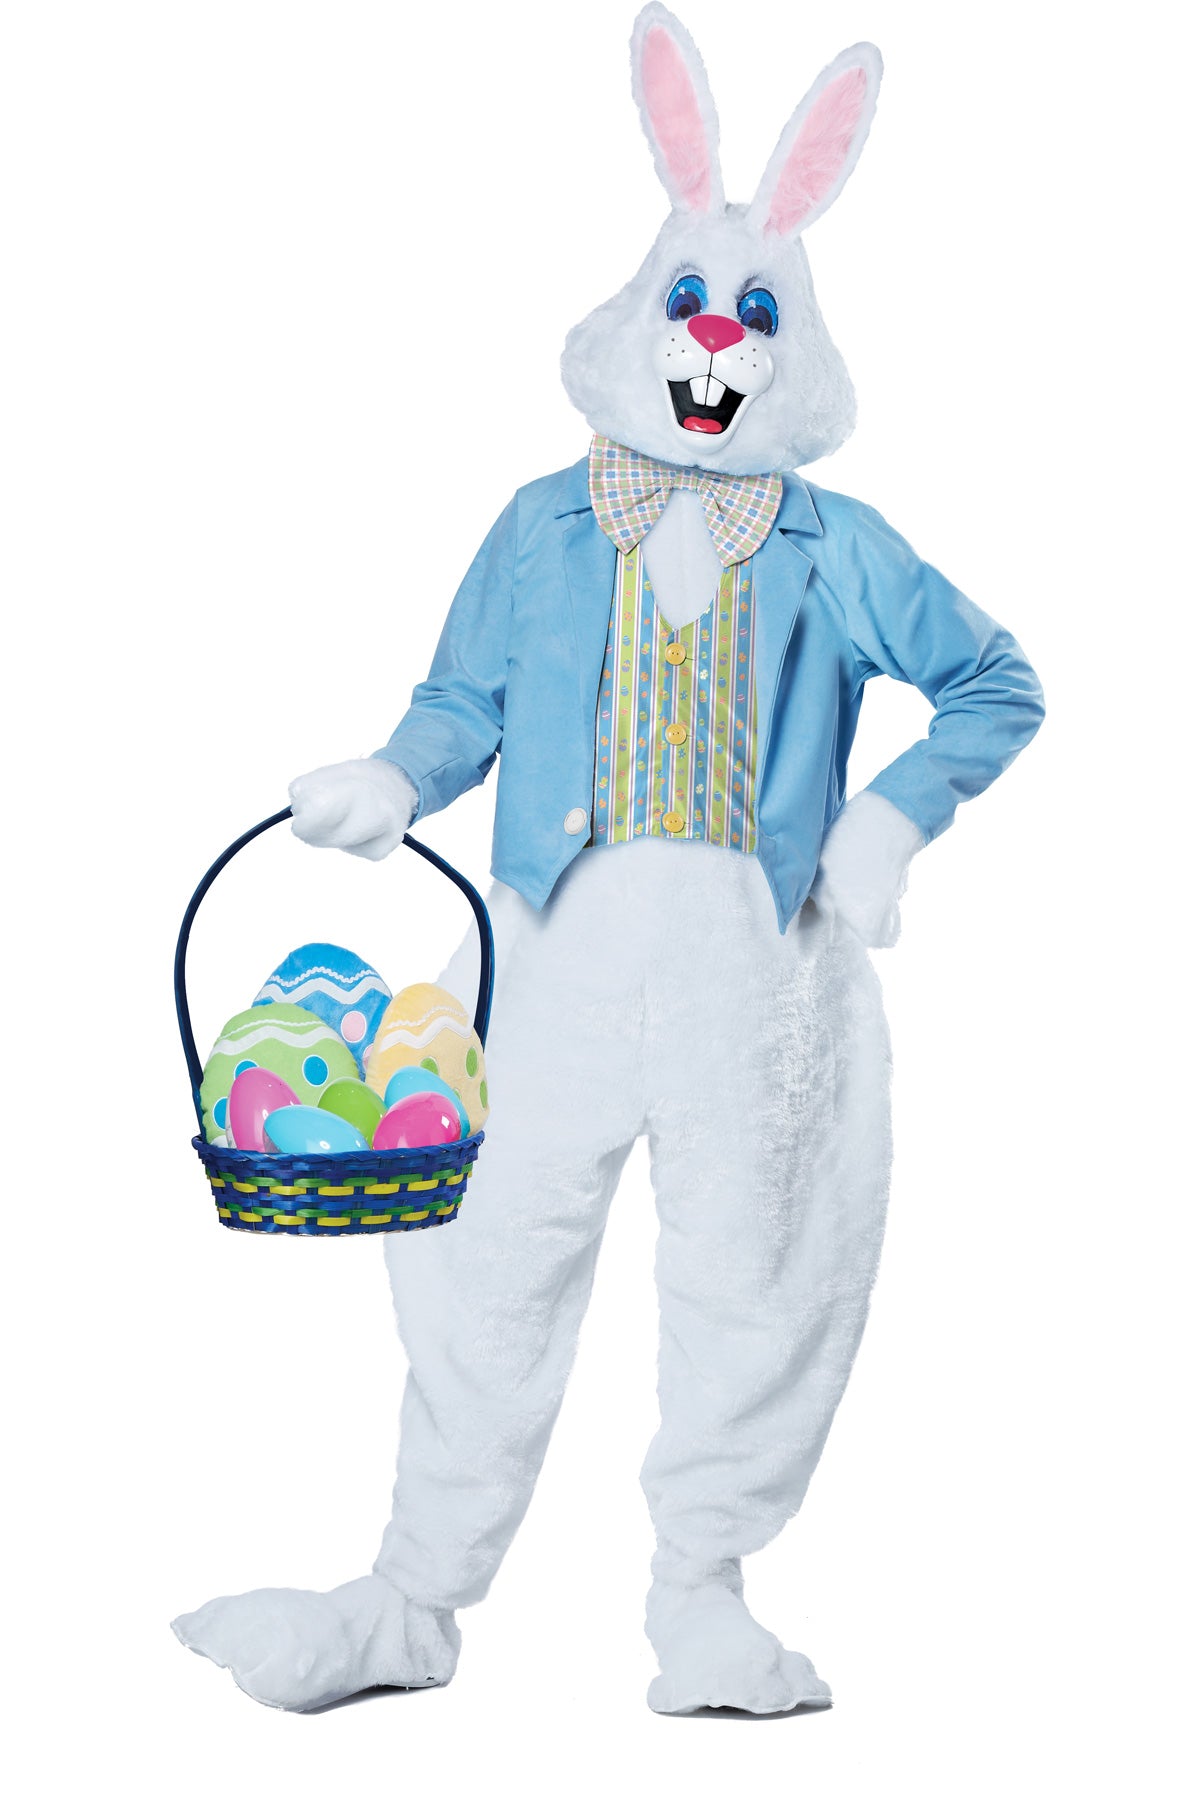 Deluxe Easter Bunny/Plus California Costume  01567PLUS